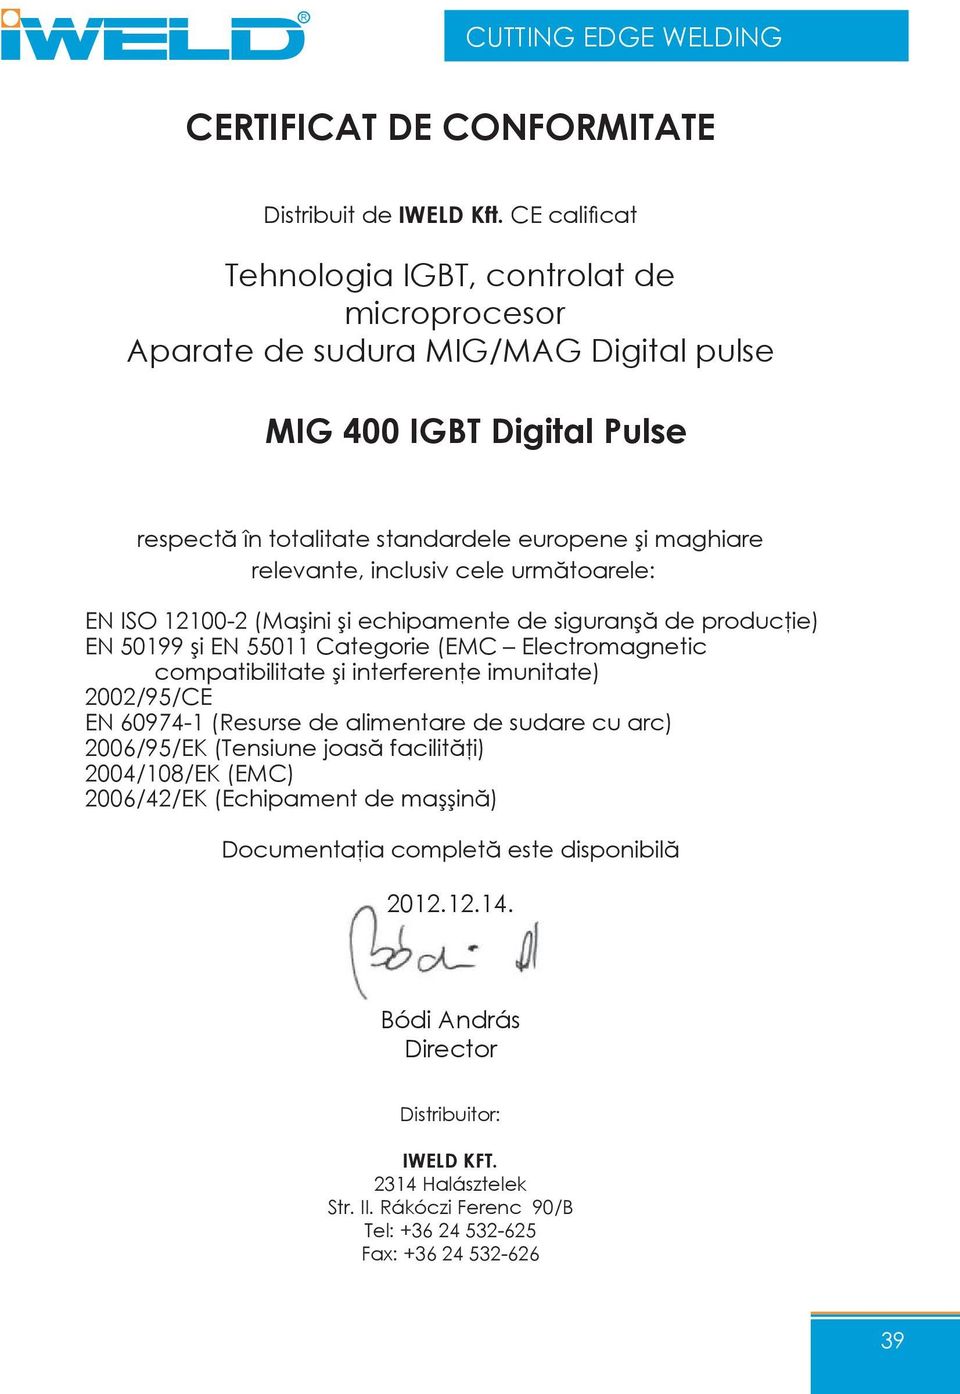 inclusiv cele următoarele: EN ISO 12100-2 (Maşini şi echipamente de siguranşă de producţie) EN 50199 şi EN 55011 Categorie (EMC Electromagnetic compatibilitate şi interferenţe imunitate) 2002/95/CE